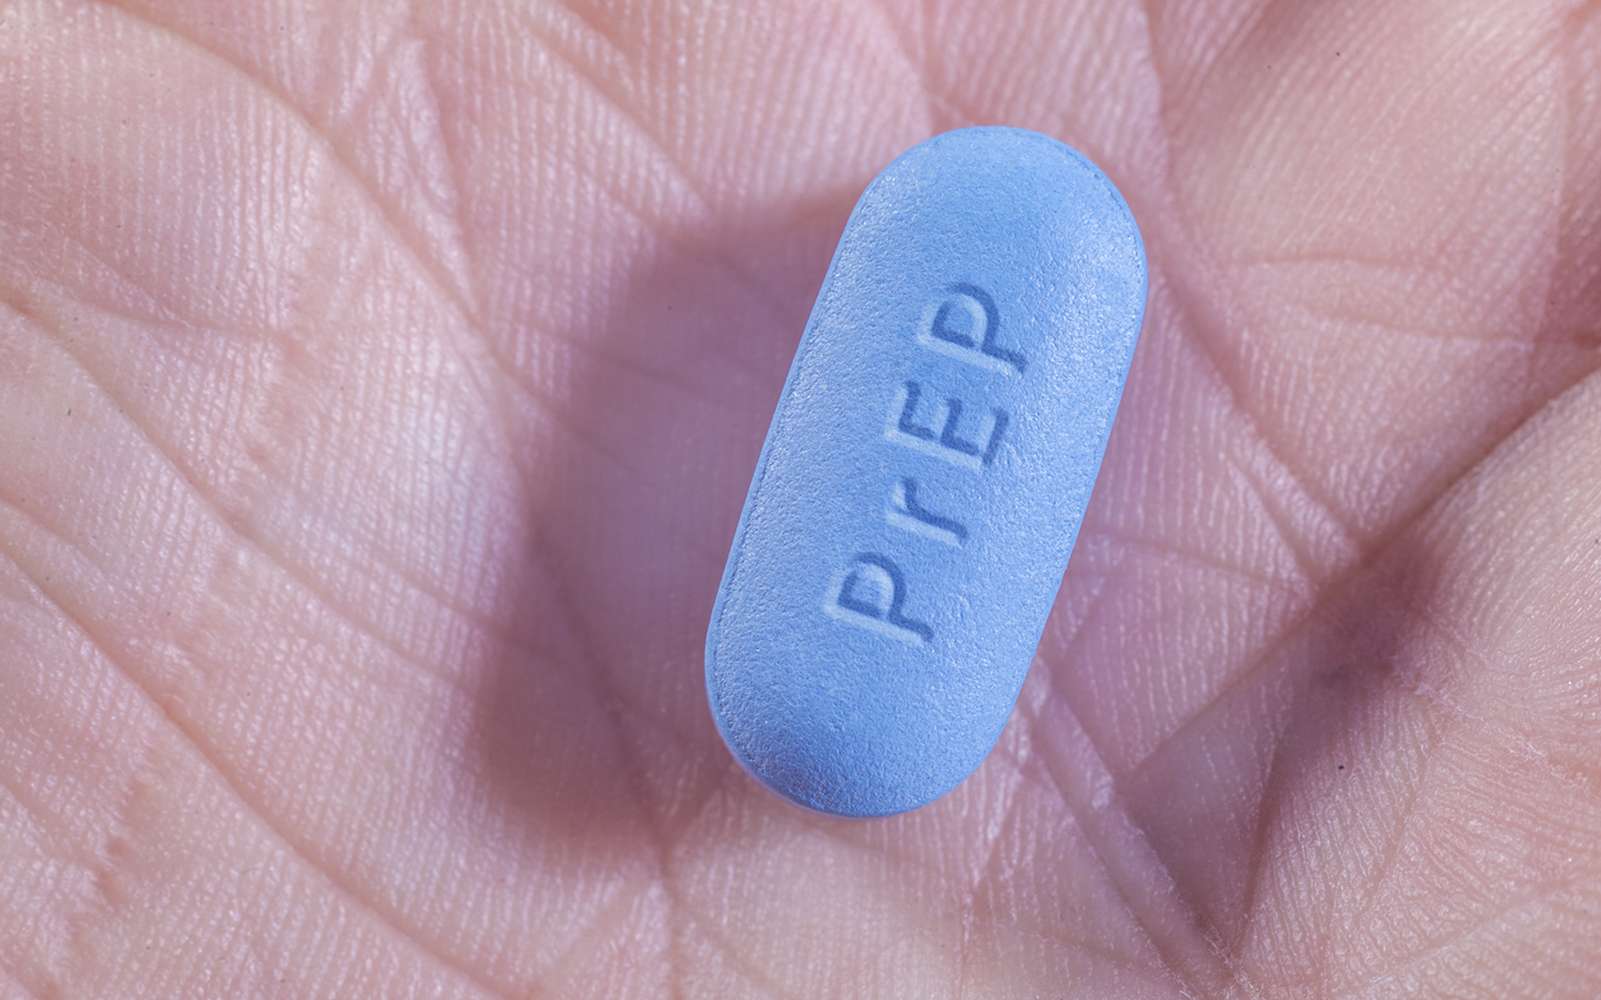 VIH : la PrEP, le traitement préventif qui mettrait fin aux contaminations